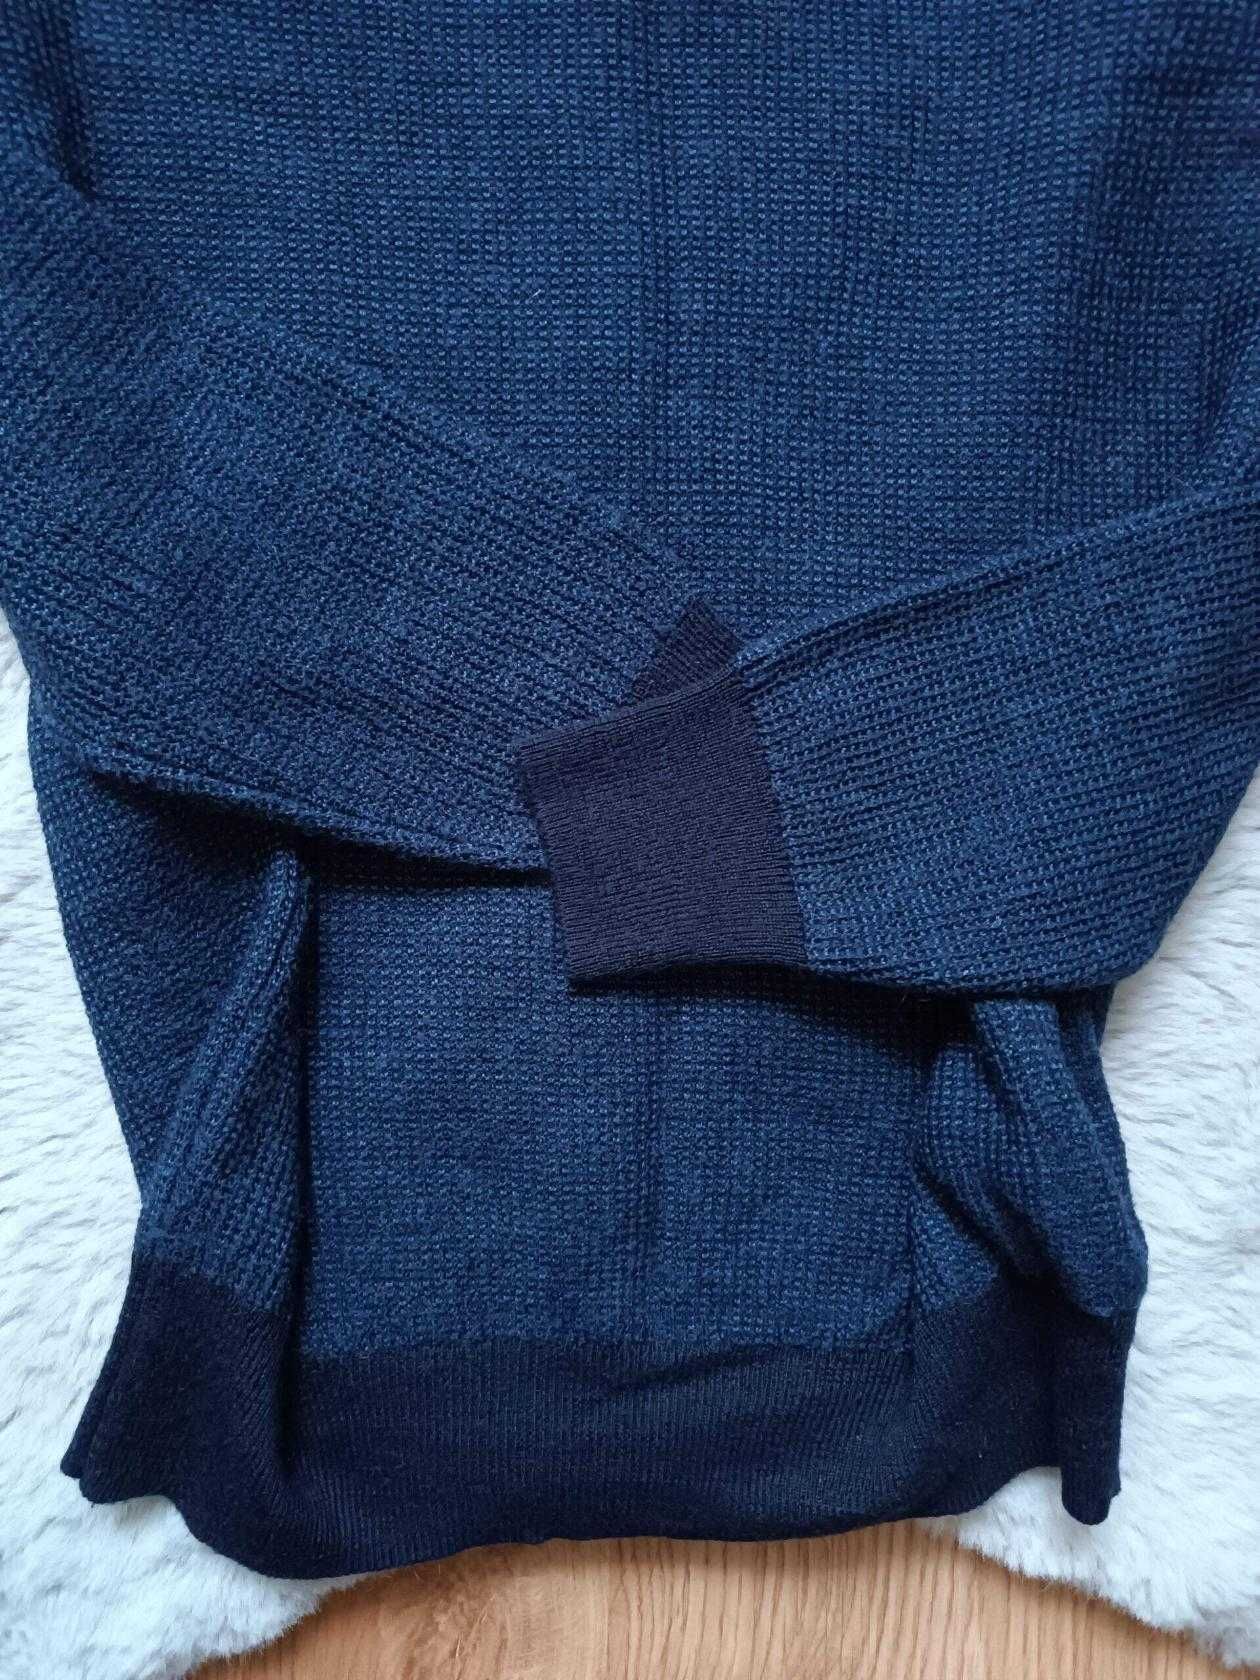 Класнючий чоловічий светр відомого бренду Zara. розмір М